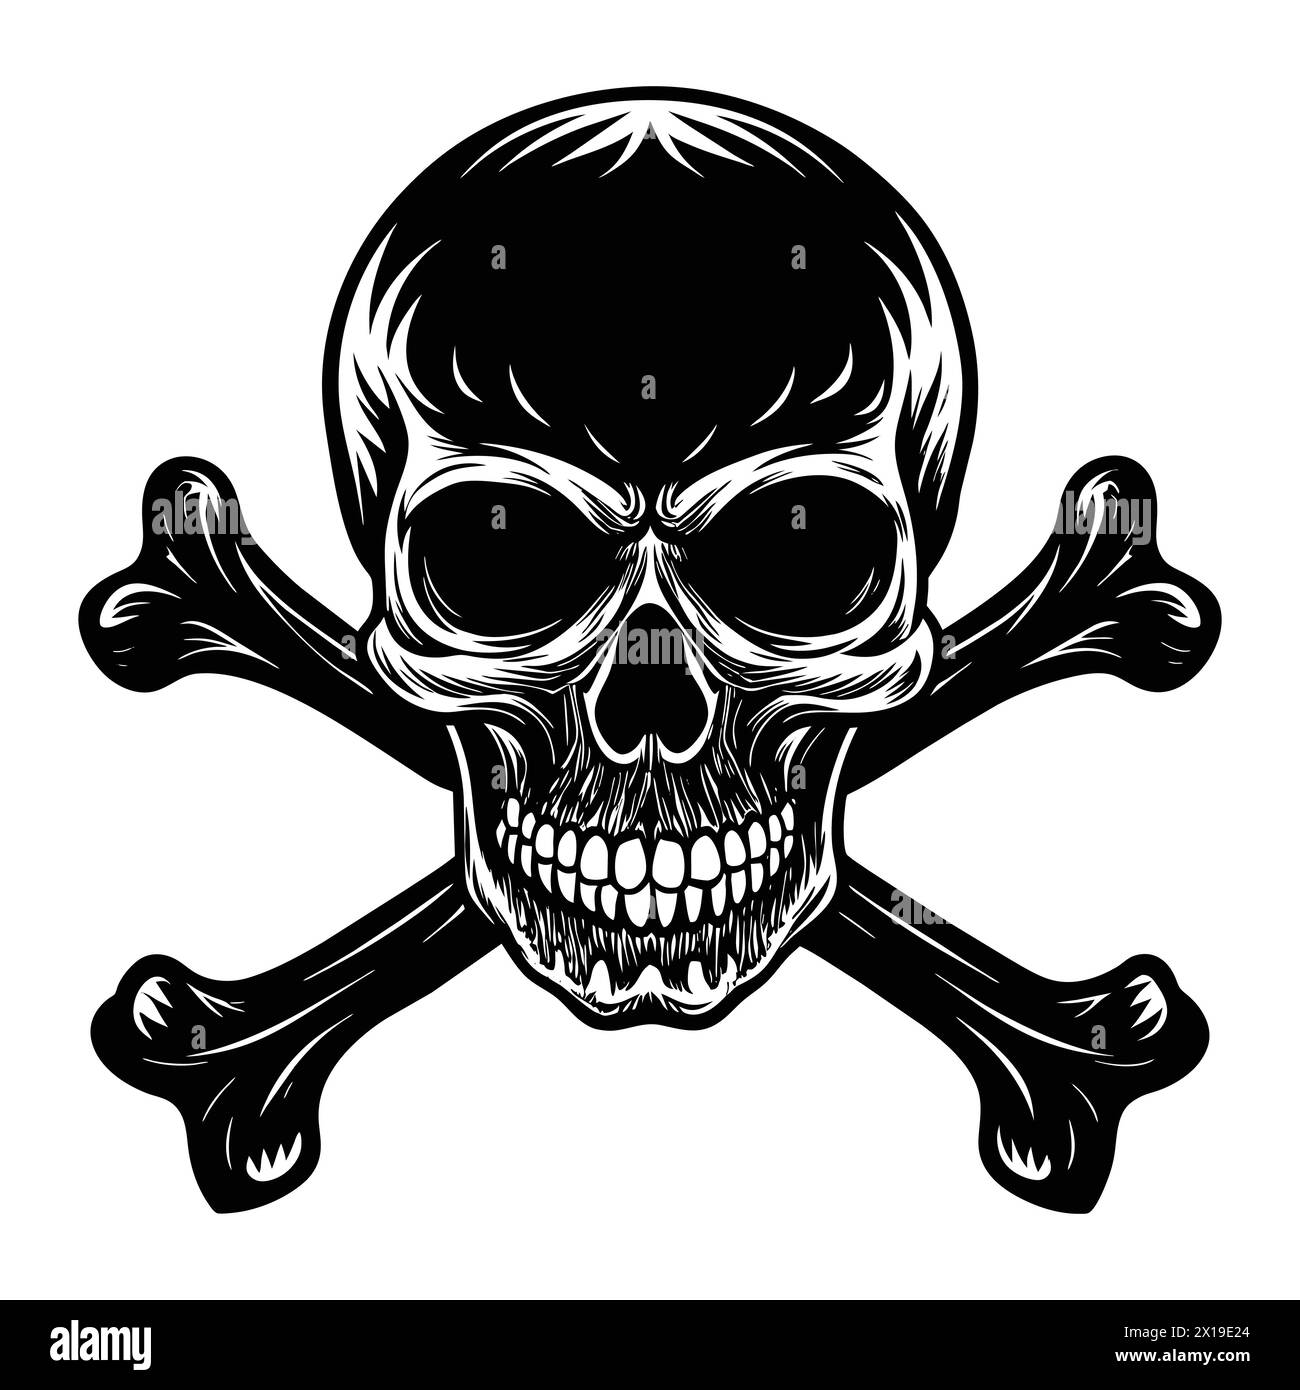 Silhouette of skull and bones - 'Gothic Skull and Bones Silhouette: Dark Grunge Illustration' Stock Vector